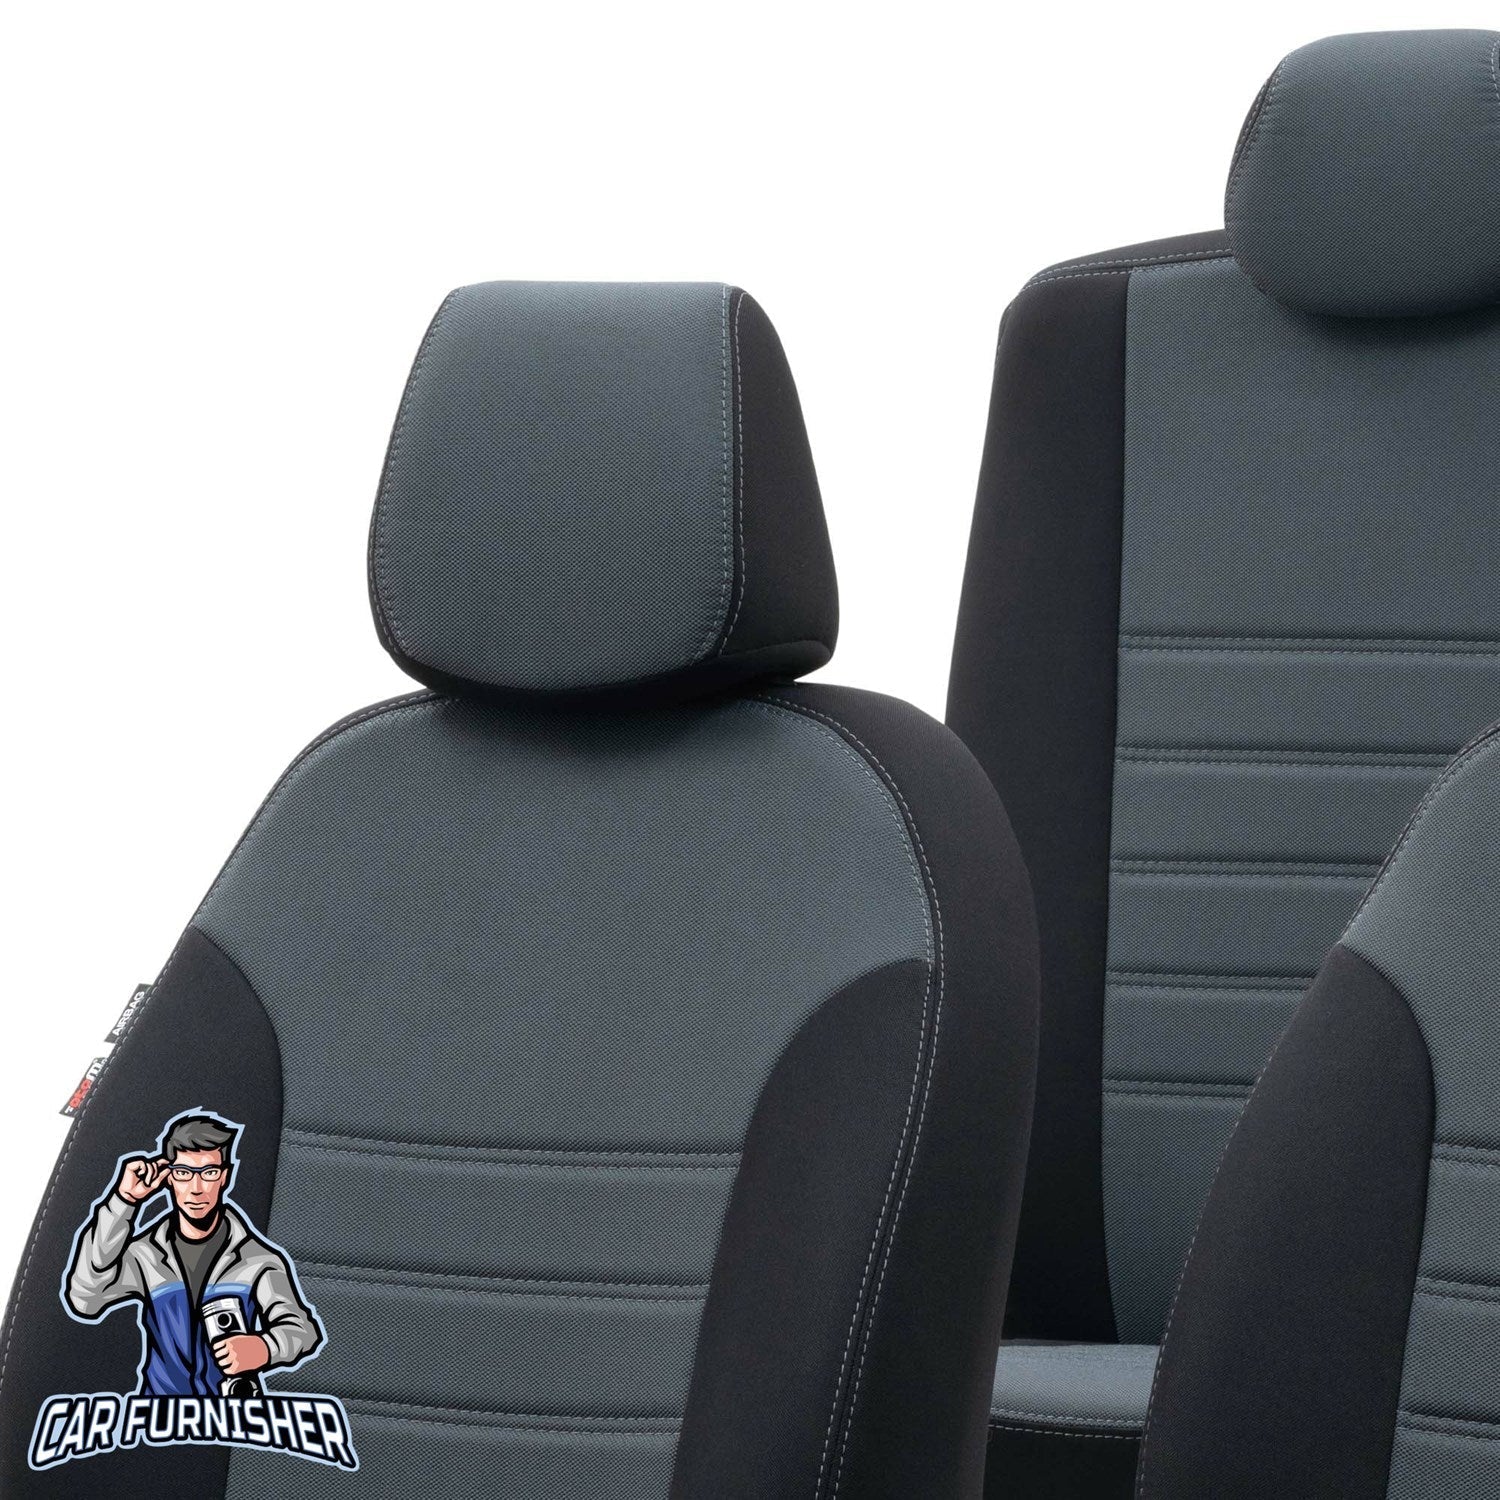 Suzuki Grand Vitara Seat Covers Original Jacquard Design Smoked Black Jacquard Fabric